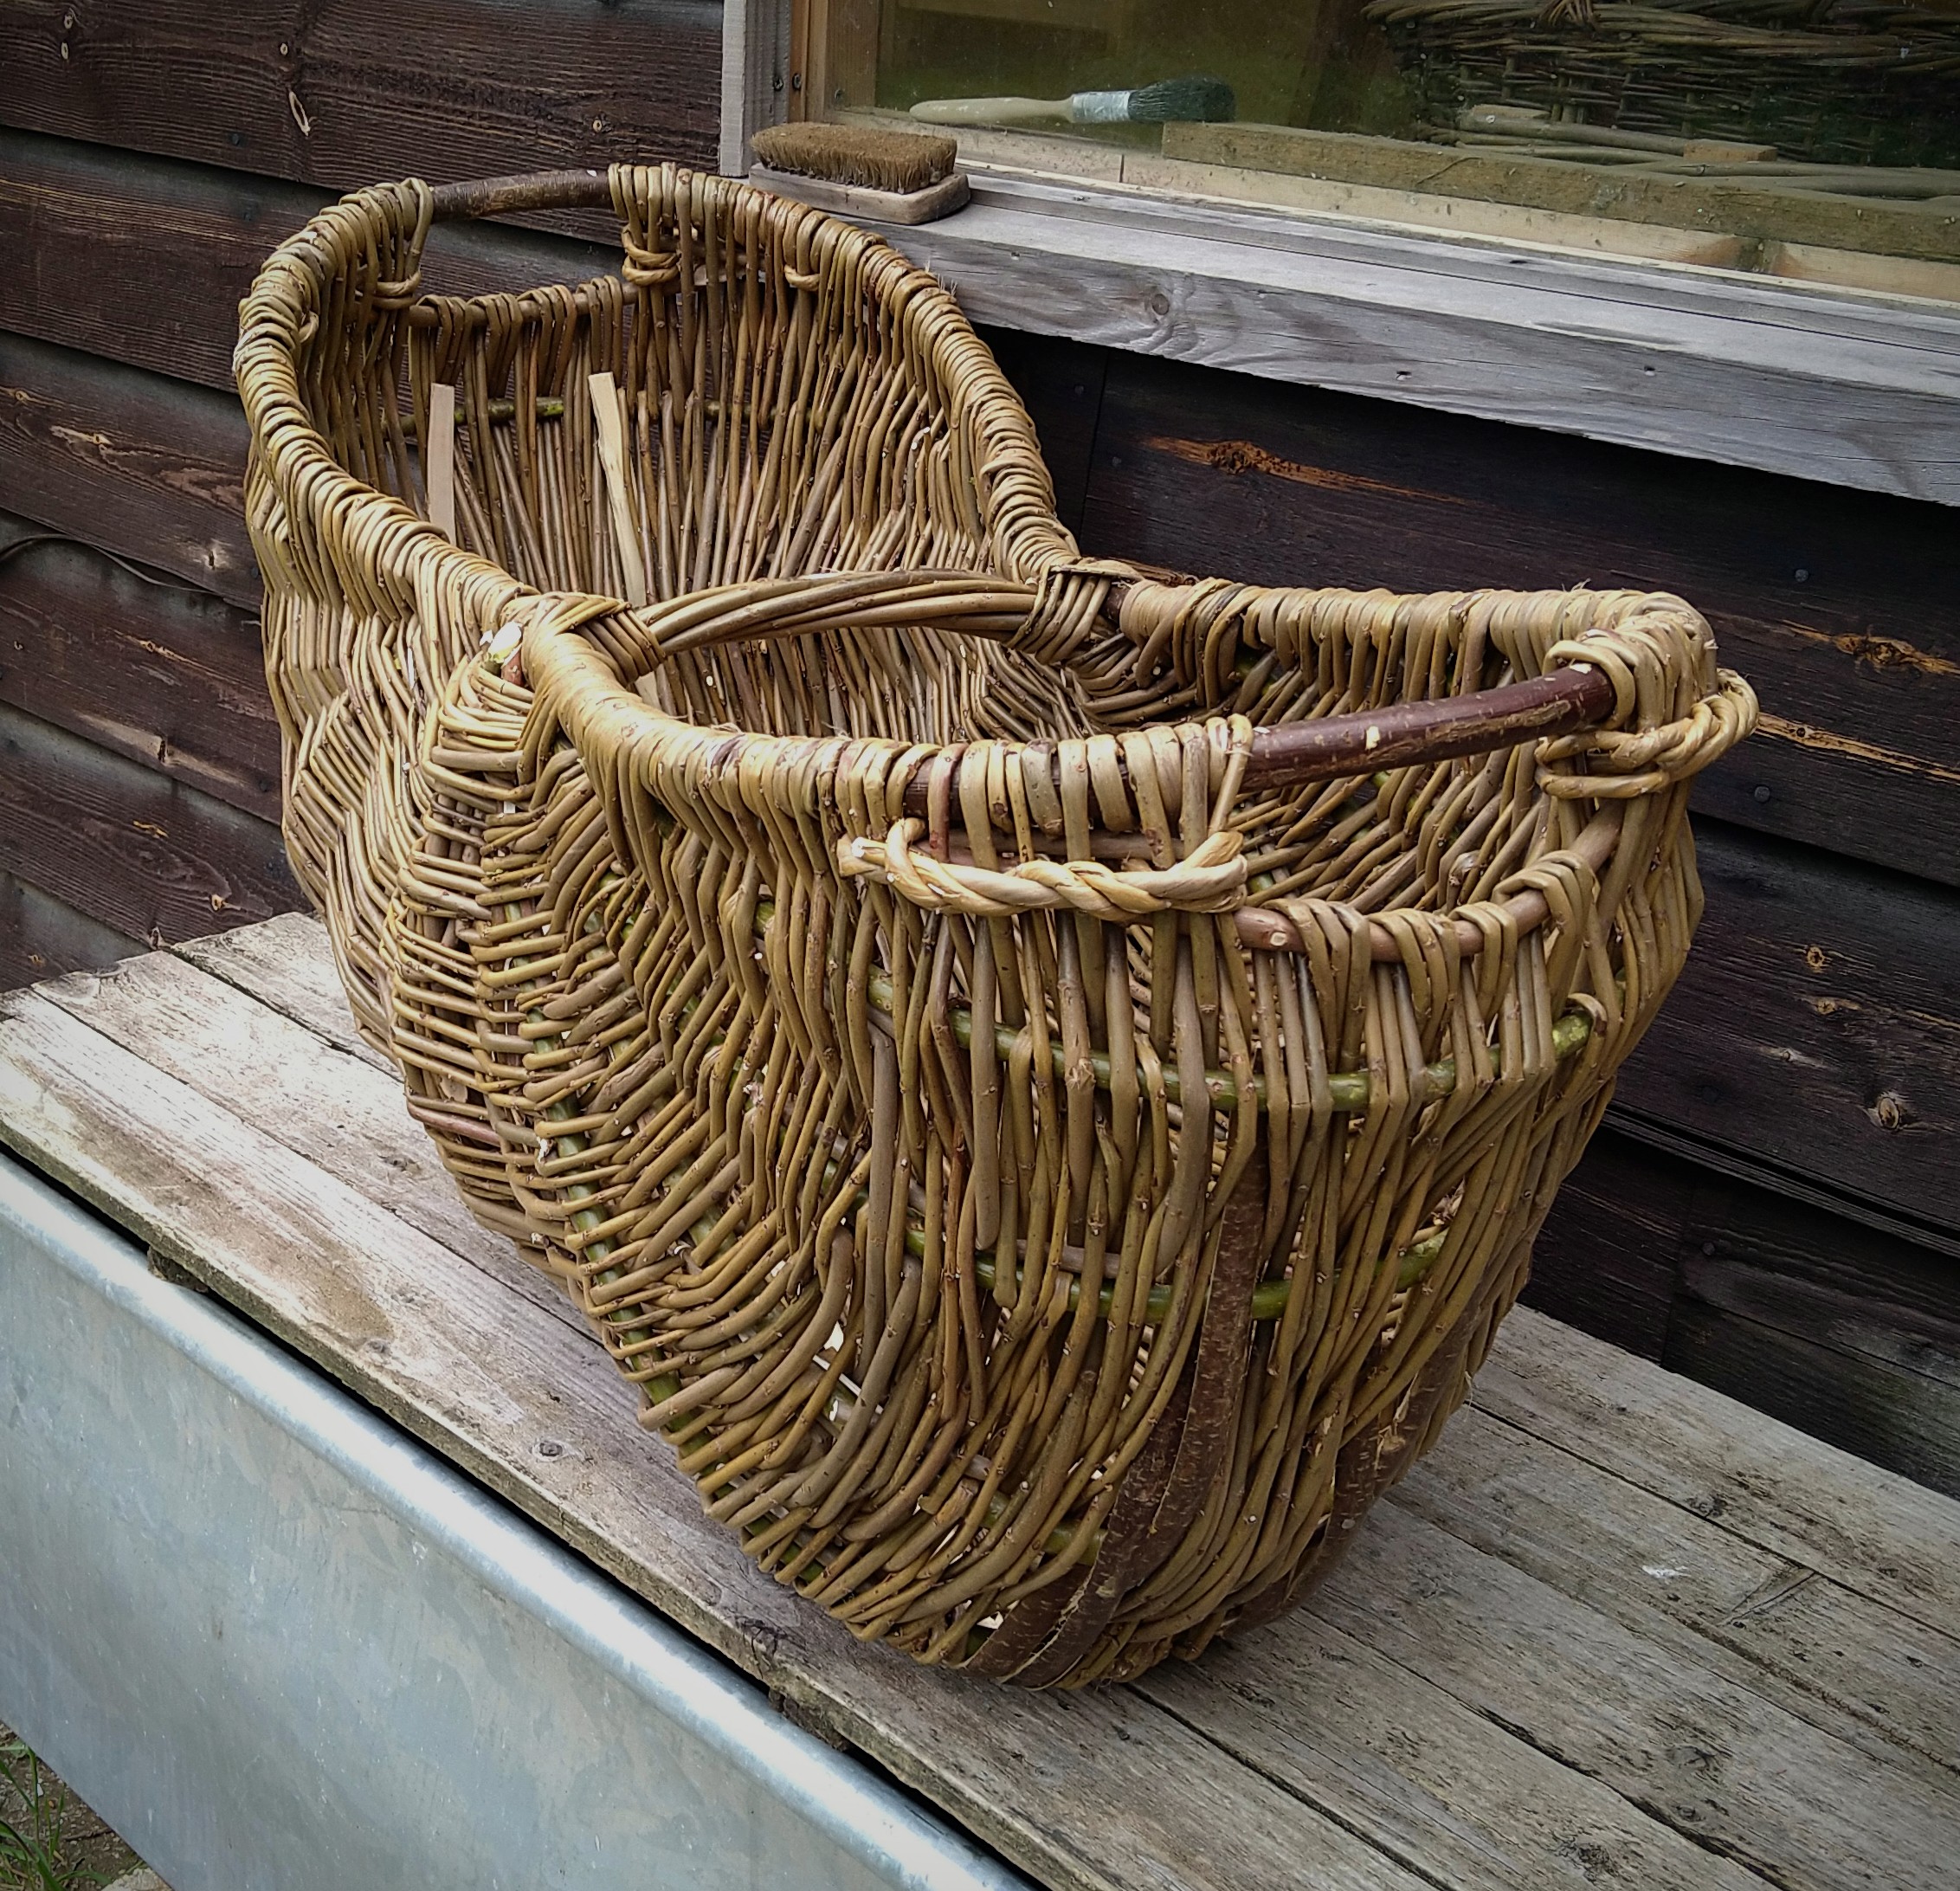 Peter's Basket